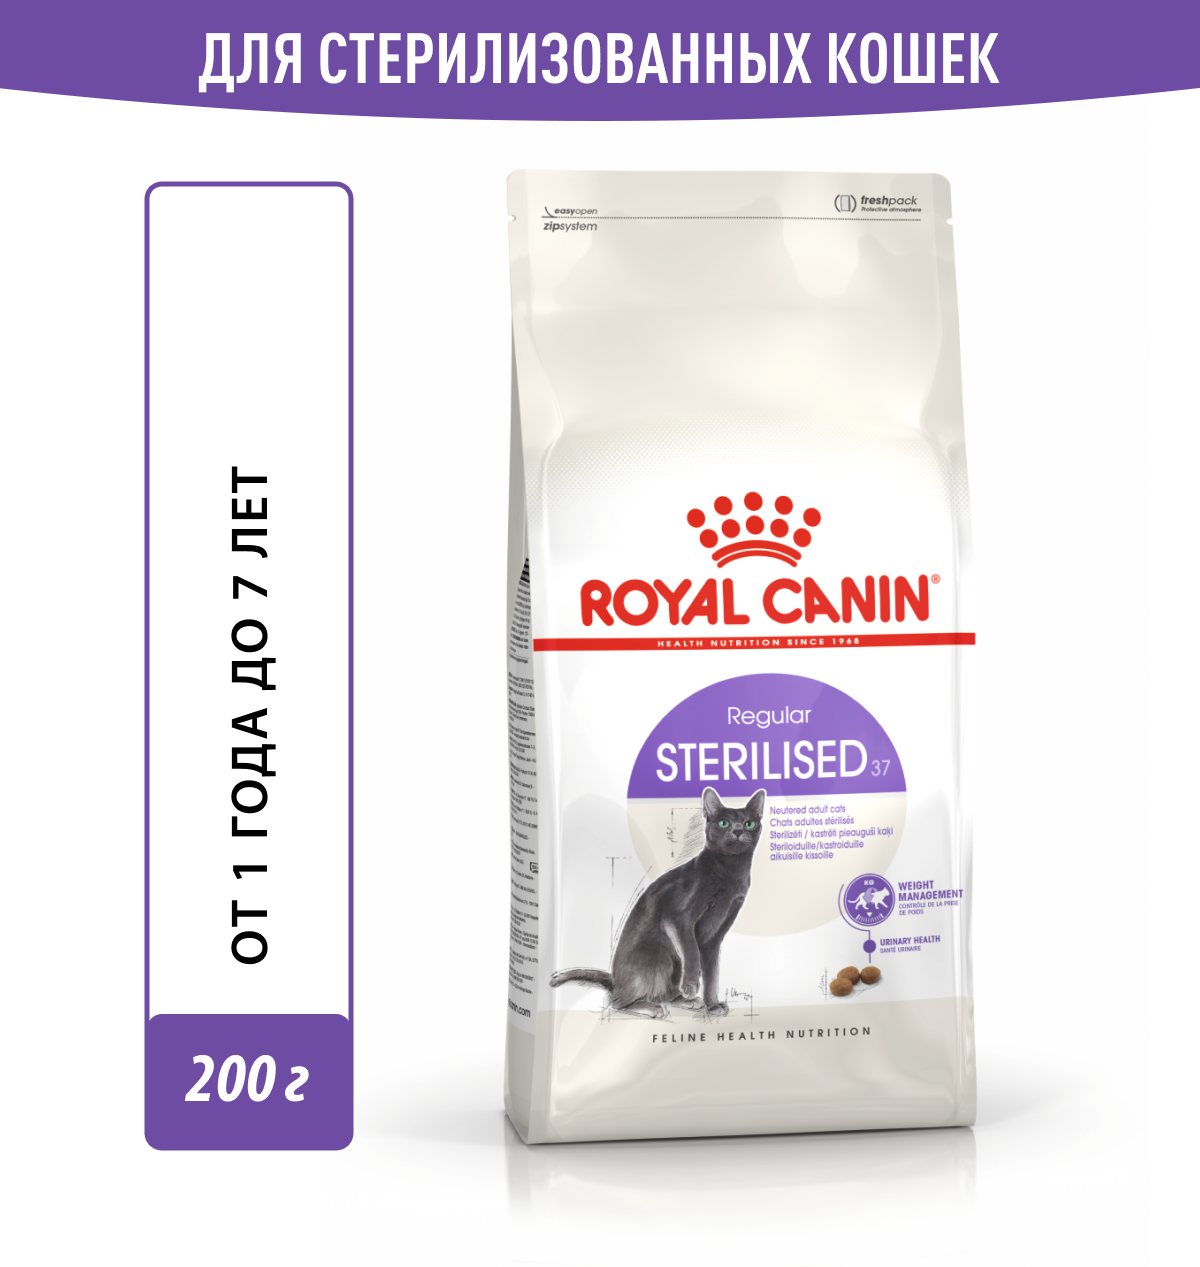 Корм для кошек Royal Canin Sterilised 37 (Стерилайзд 37) сухой сбалансированный для стерилизованных кошек, 0,2 кг — купить в интернет-магазине по низкой цене на Яндекс Маркете